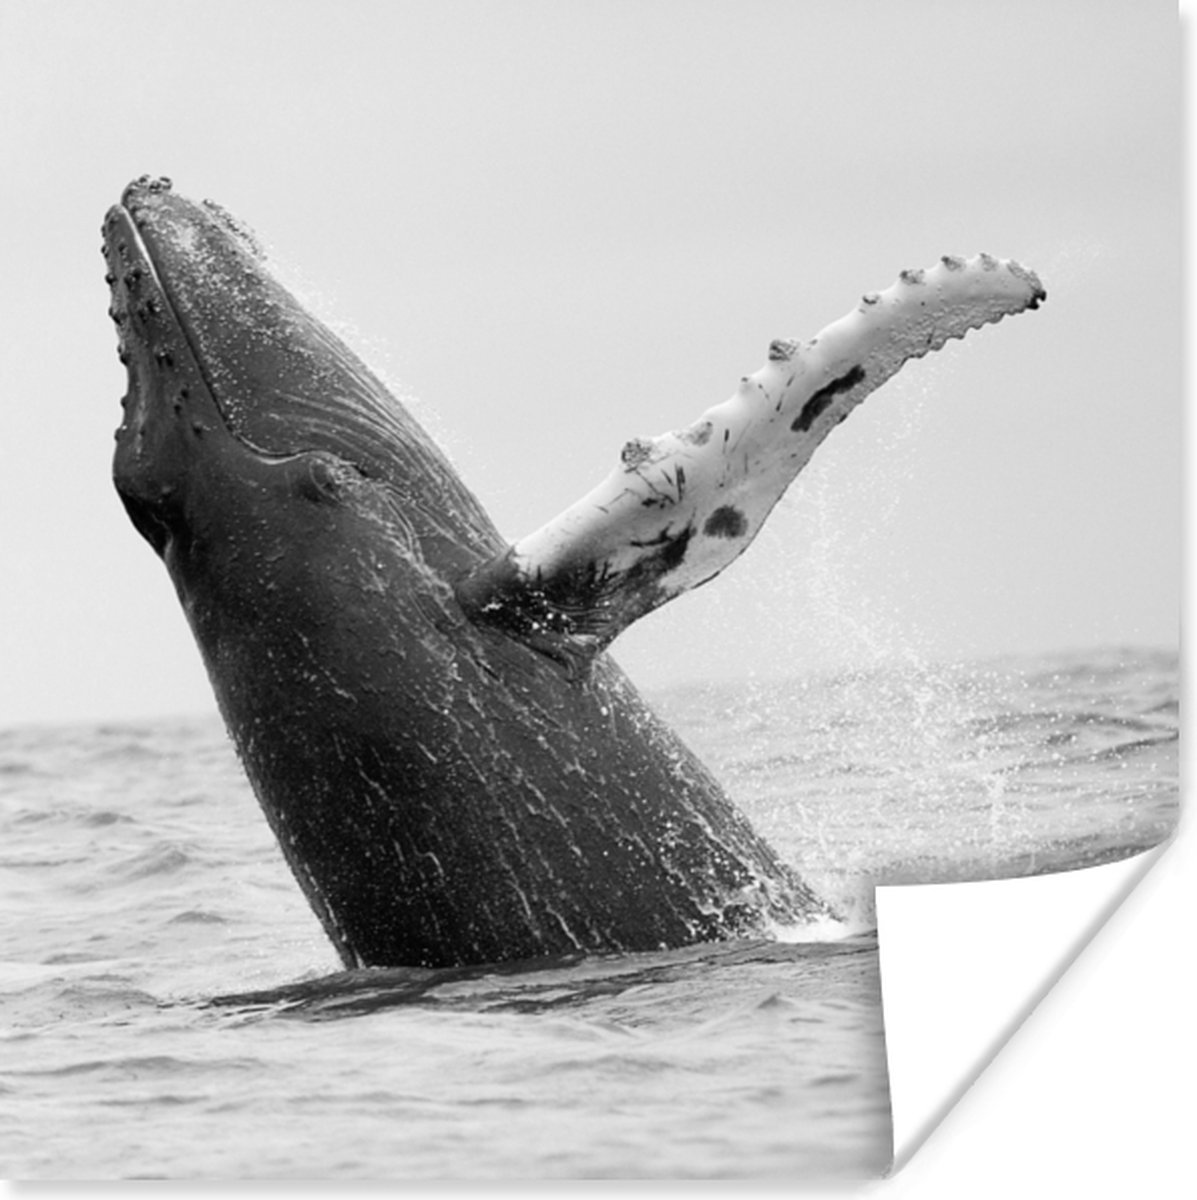 Baleine à bosse dans l'océan près du Costa Rica en papier poster